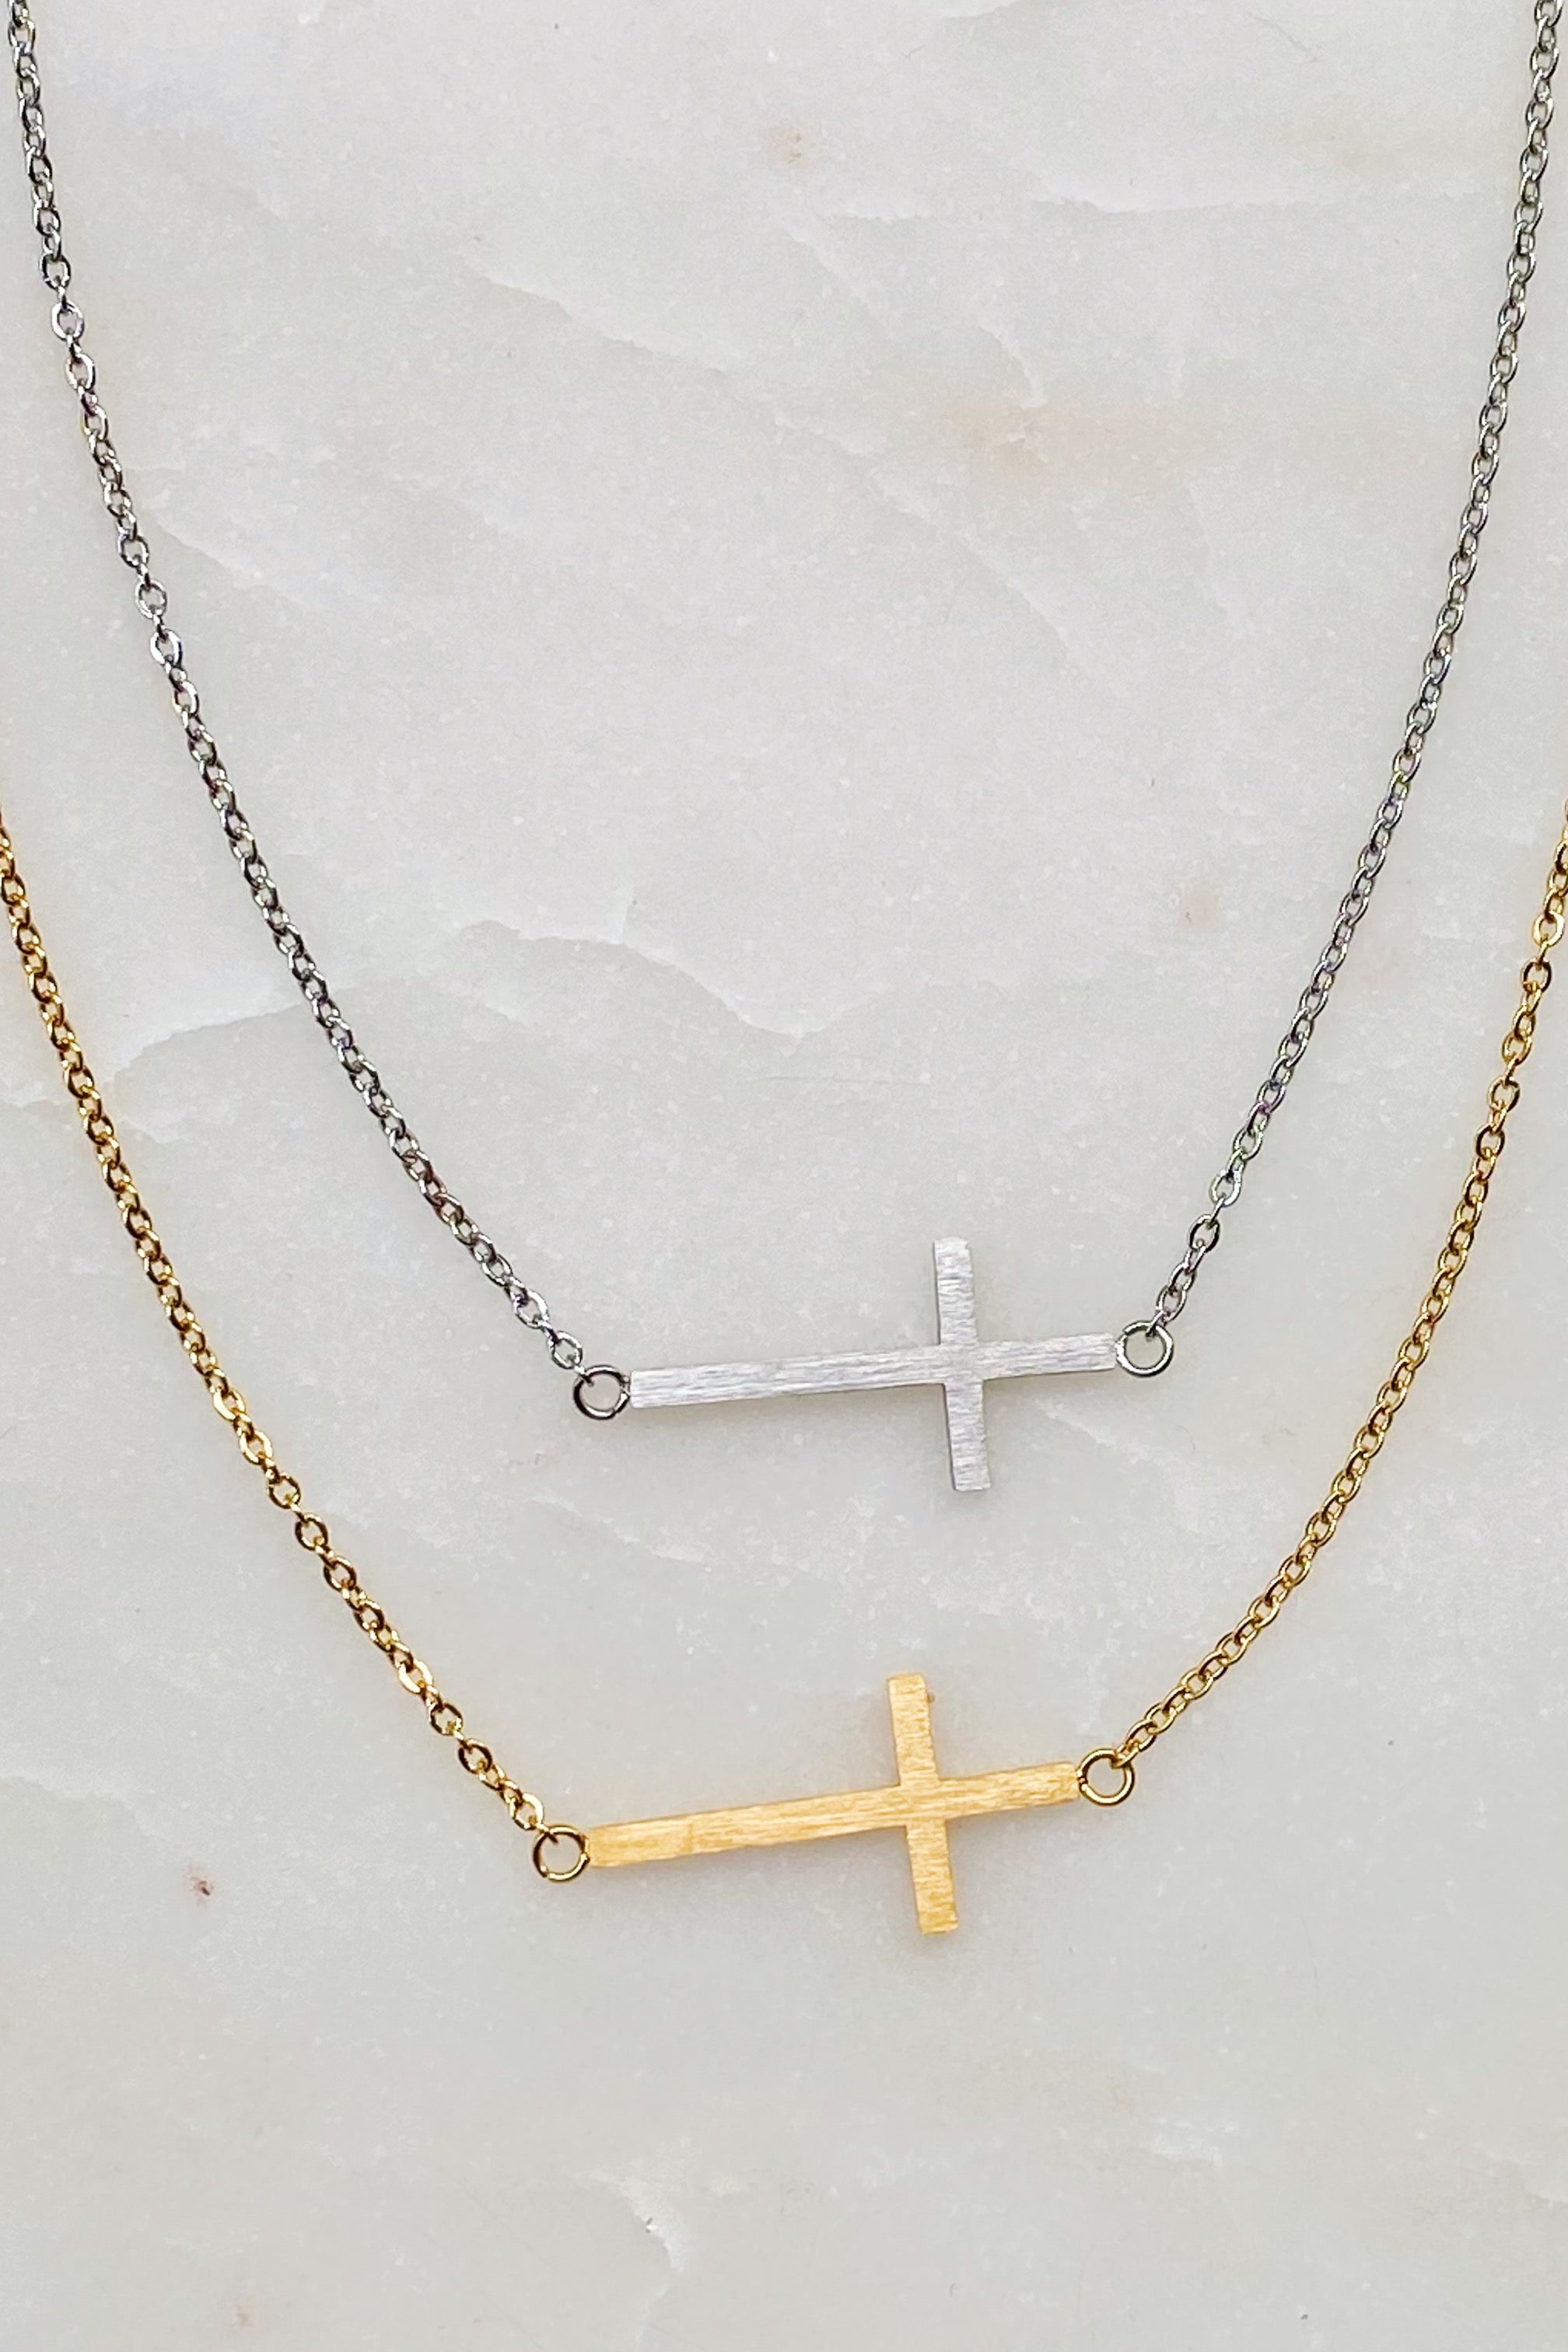 Kayla Cross Necklace by Ellisonyoung.com